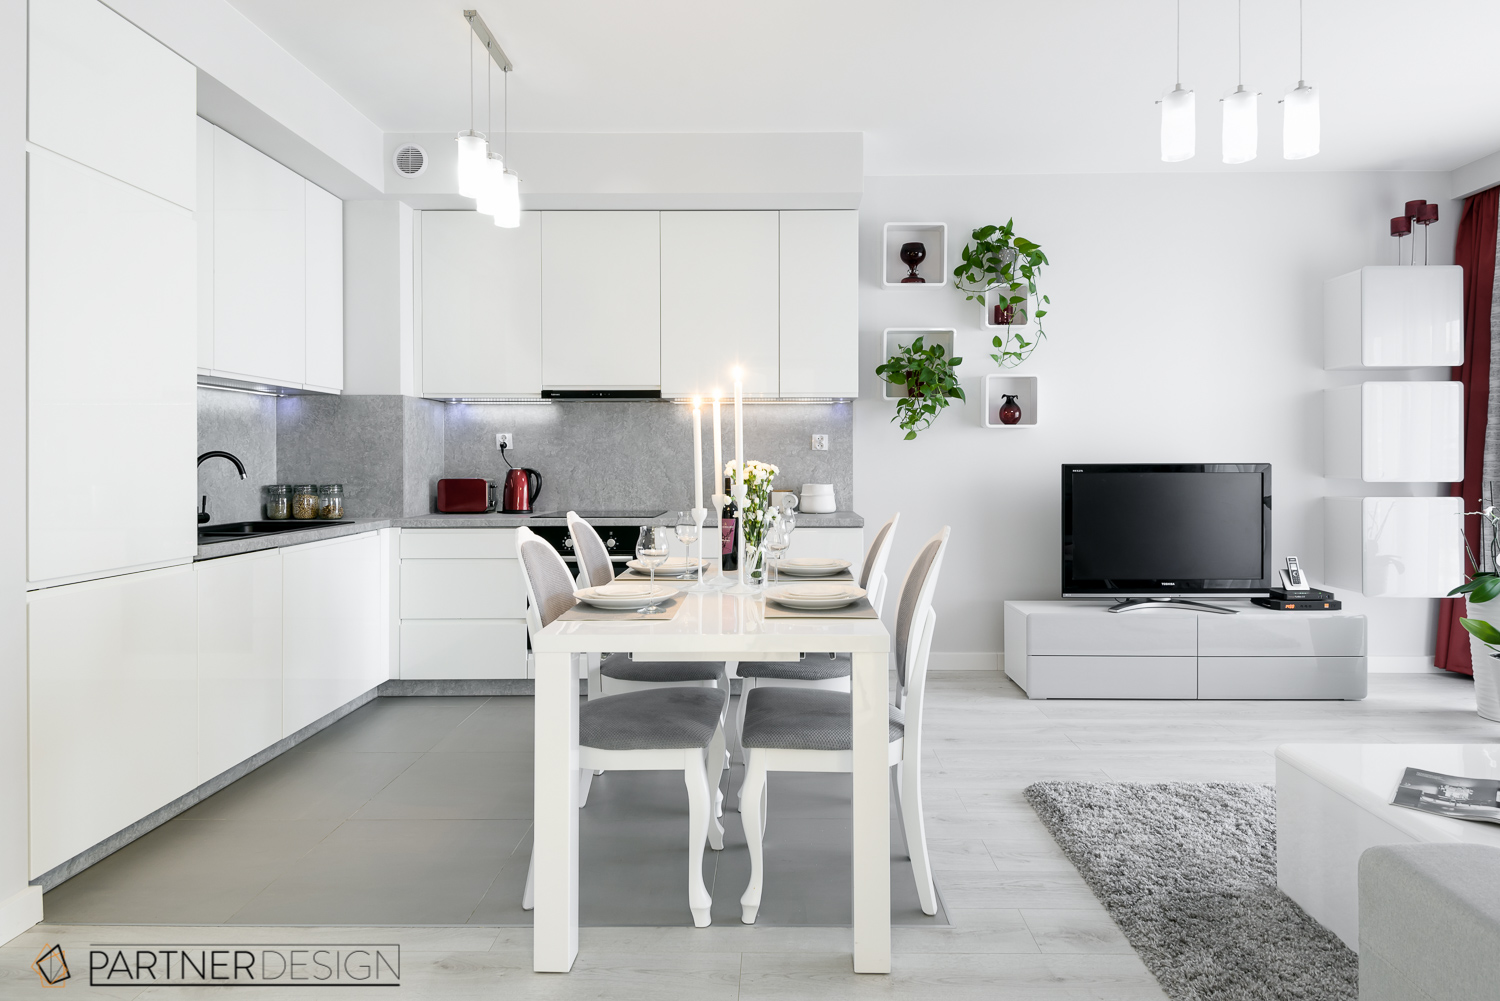 kuchnia, partner design, mieszkanie all in white